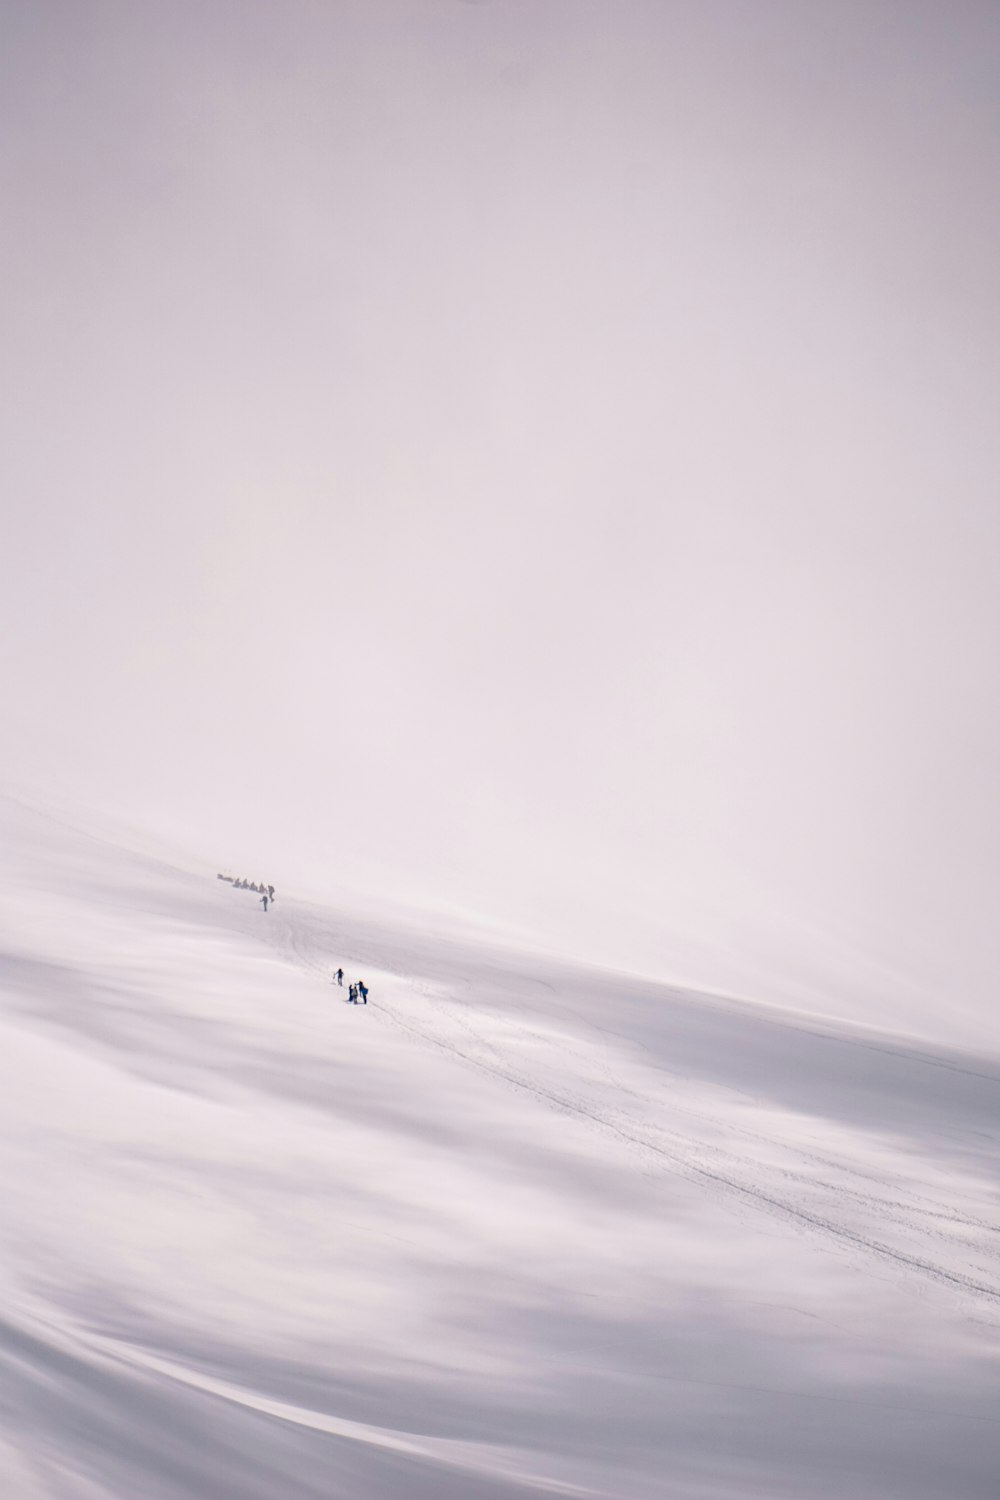 pessoa na jaqueta preta andando no campo coberto de neve branca durante o dia